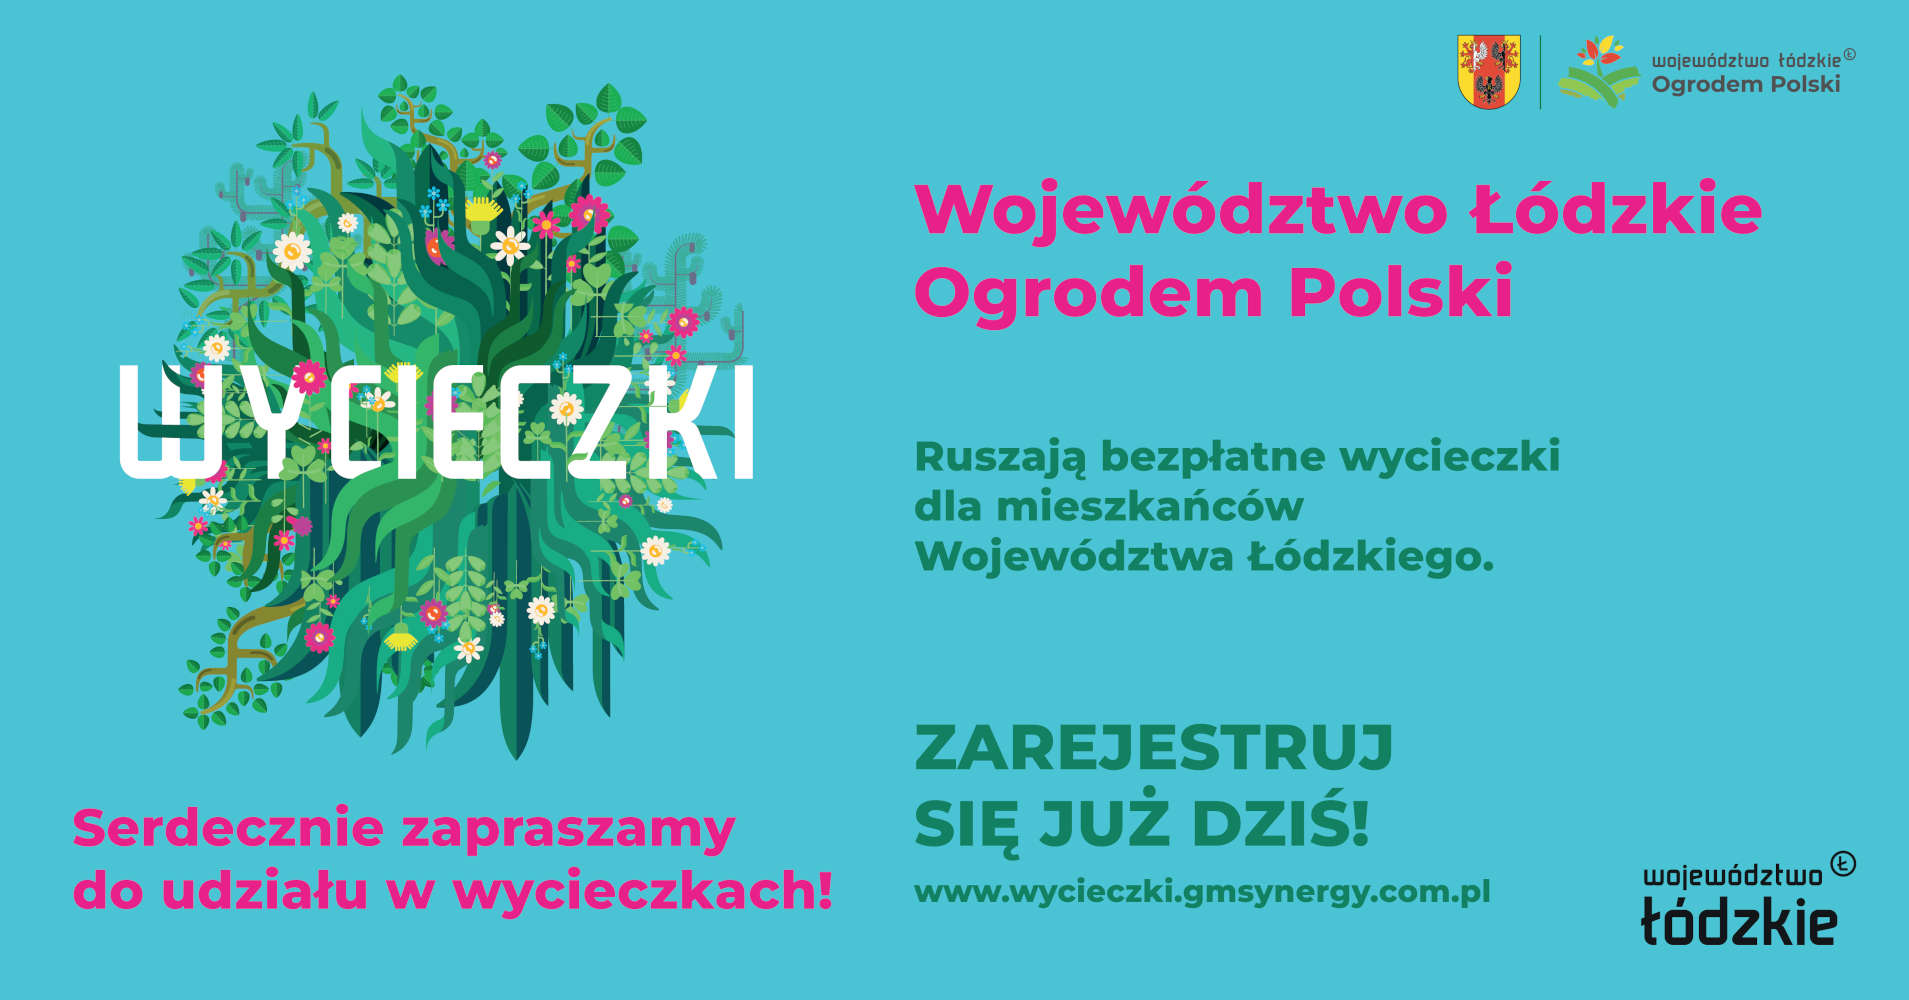 Bezpłatne wycieczki dla mieszkańców województwa łódzkiego w ramach projektu „Województwo Łódzkie Ogrodem Polski”.